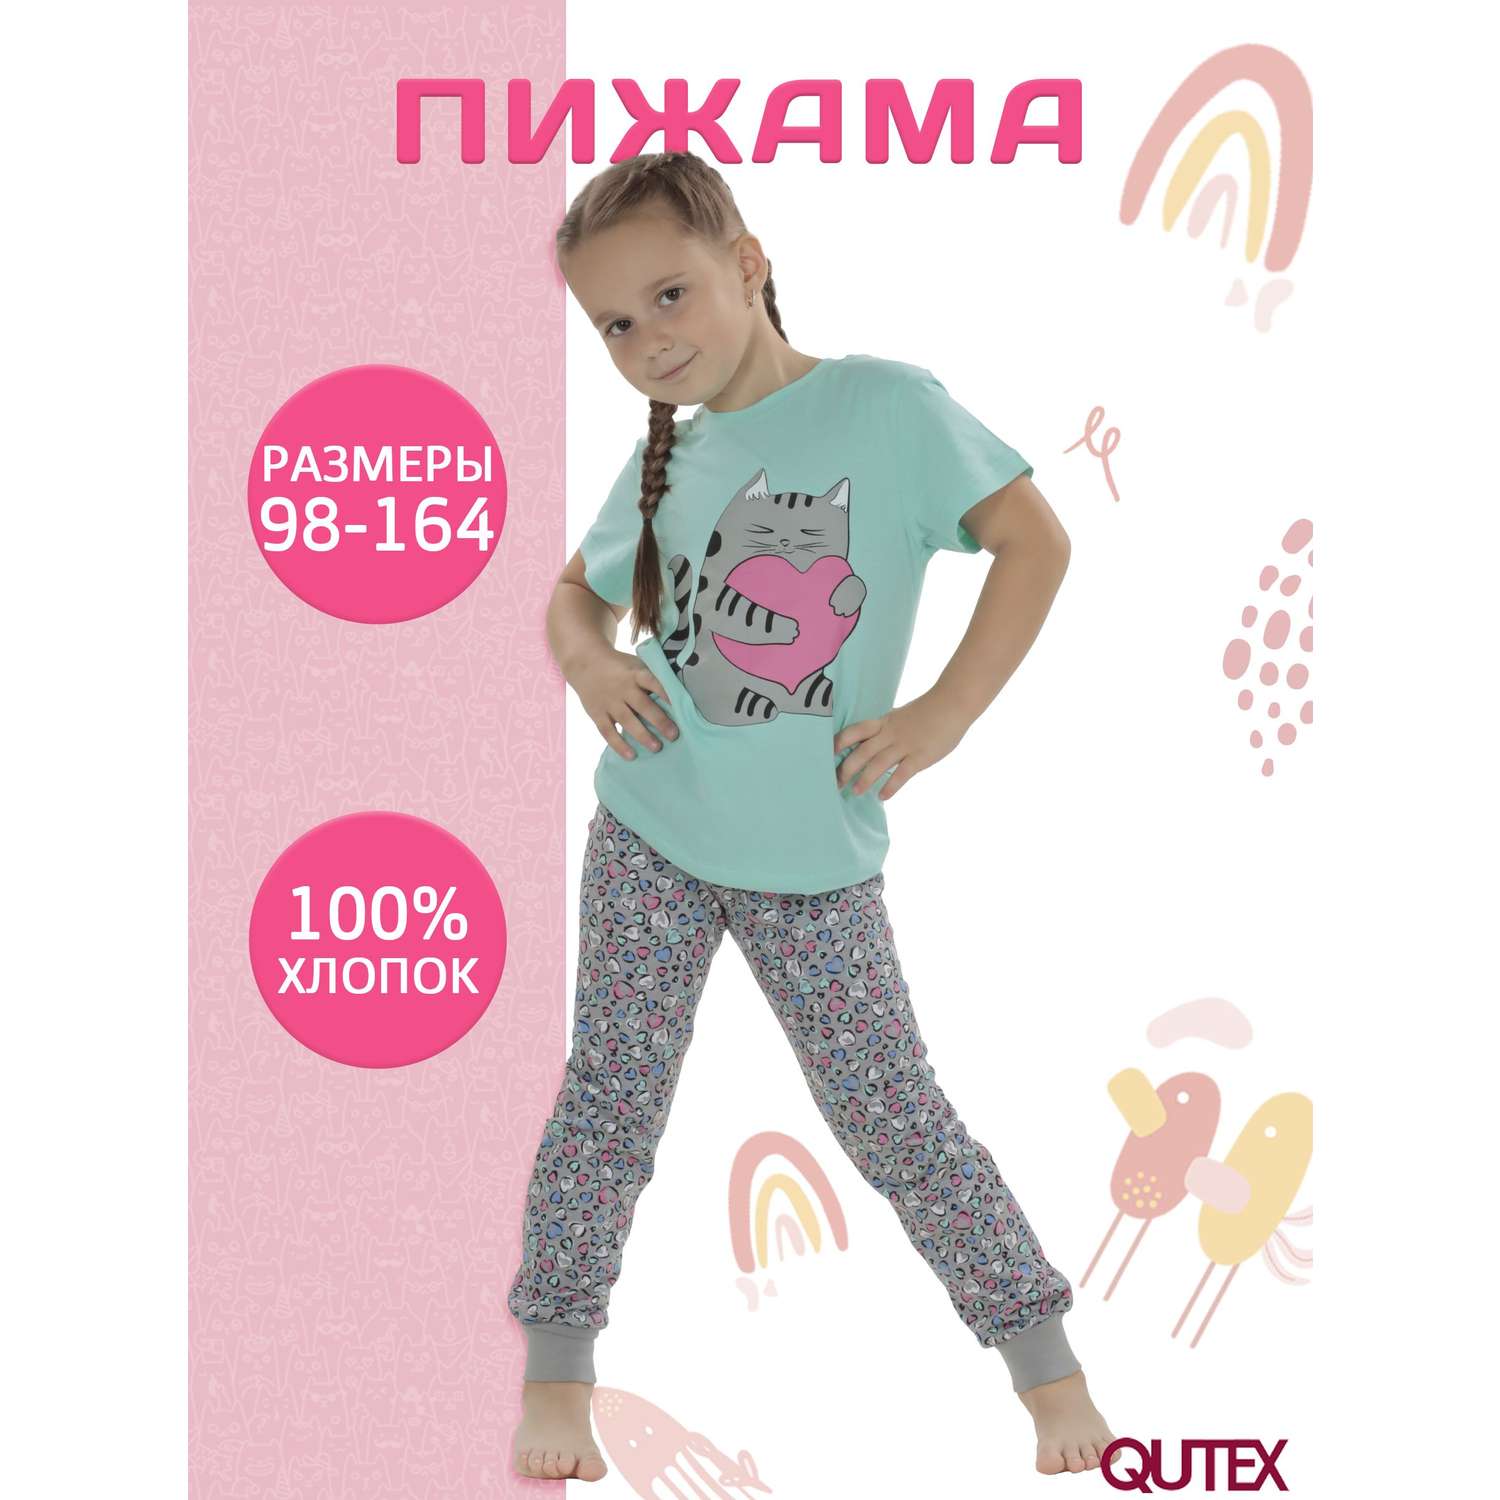 Пижама QUTEX 2301-002-1Q84 - фото 2